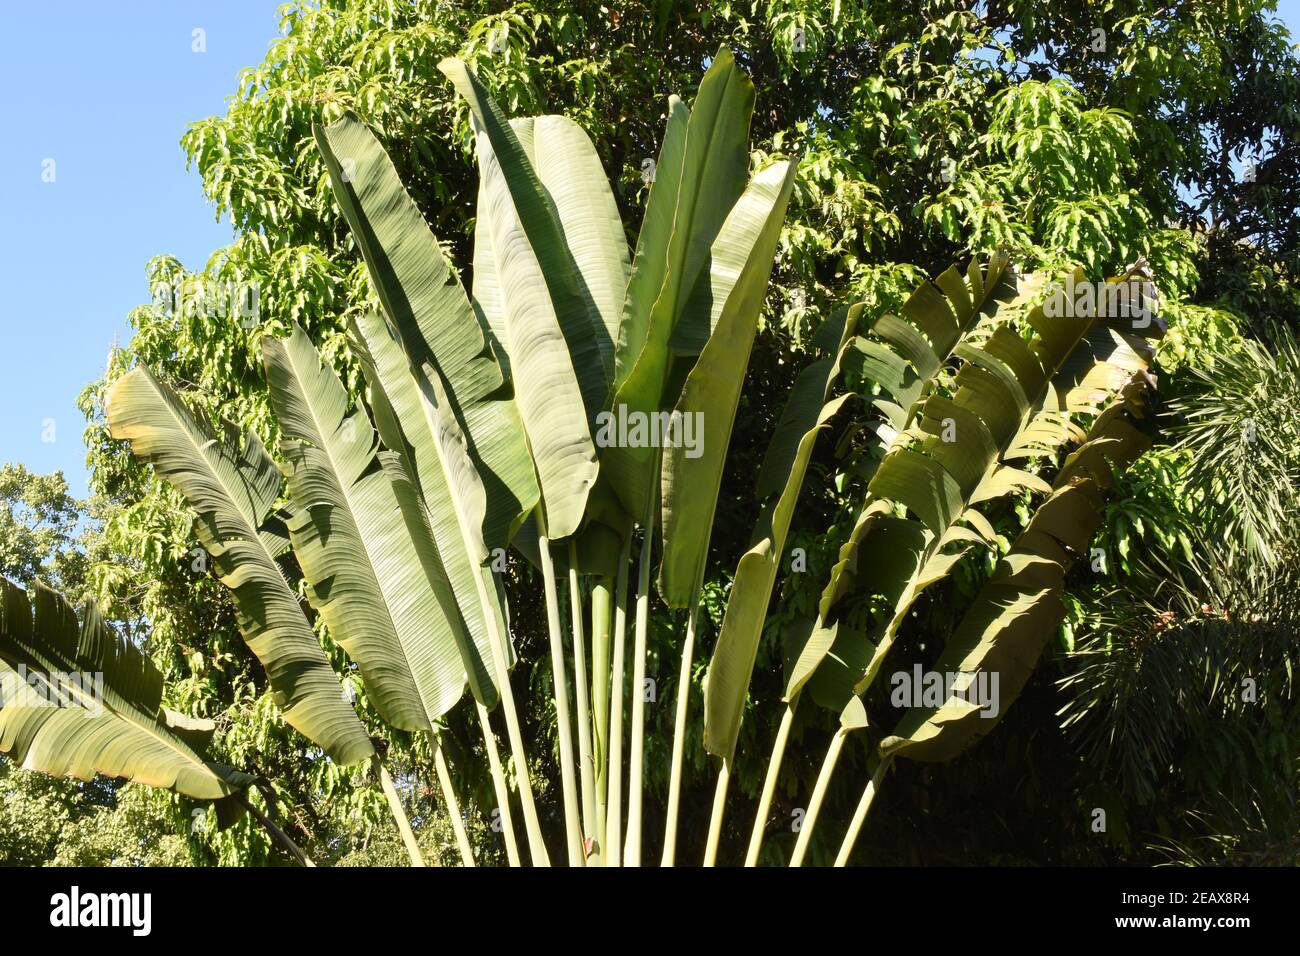 Pianta di Banana gigante, Giardino di Wat Chom Sawan, Phrae, Thailandia nord-occidentale, pianta di Banana alta e vigorosa, che cresce fino a 30 piedi (9 m), foglie verdi grandi Foto Stock